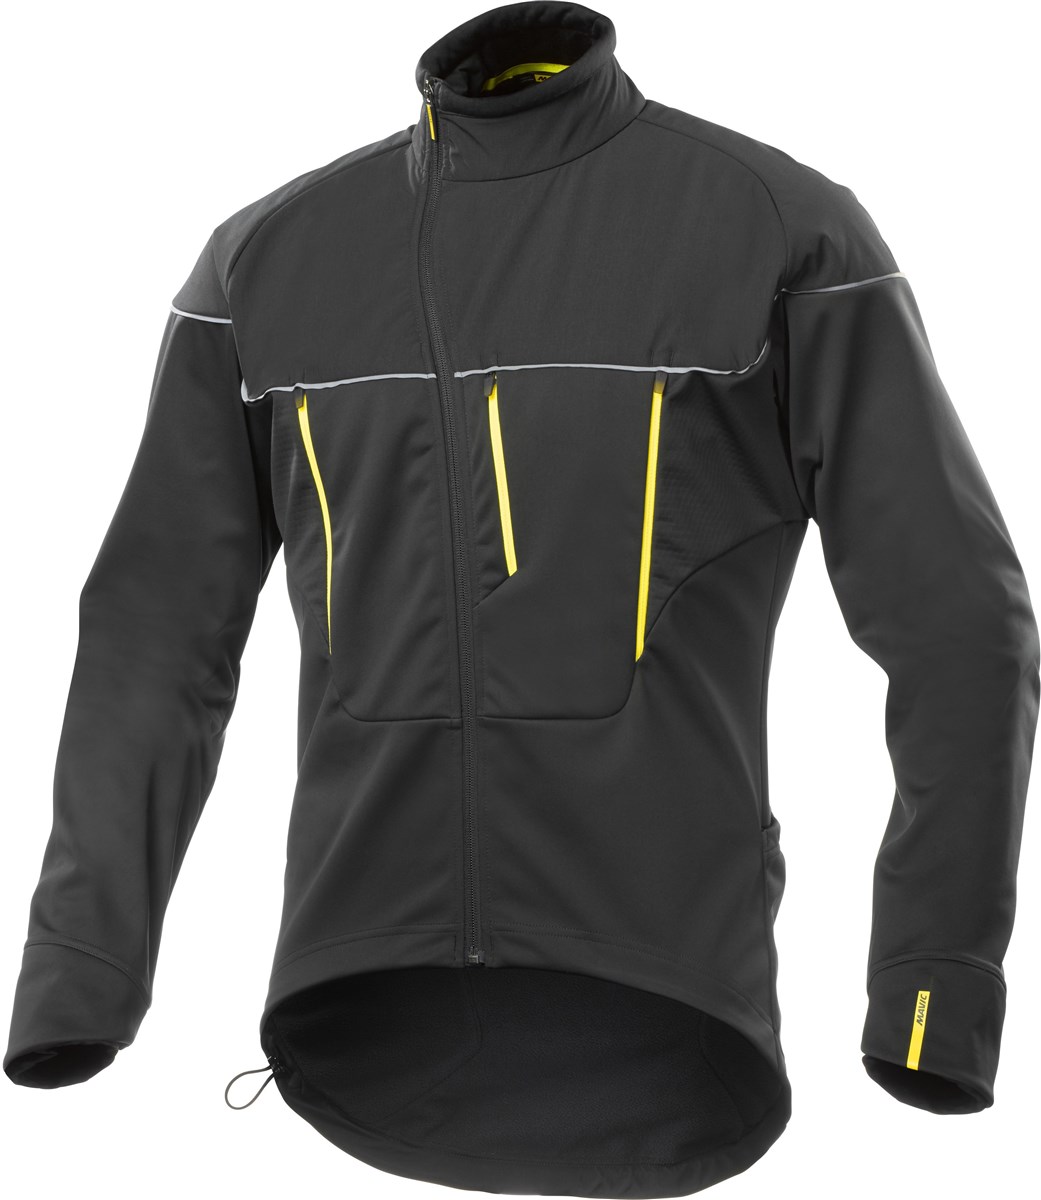 Mavic Ksyrium Pro Thermo Cycling Jacket AW16 product image